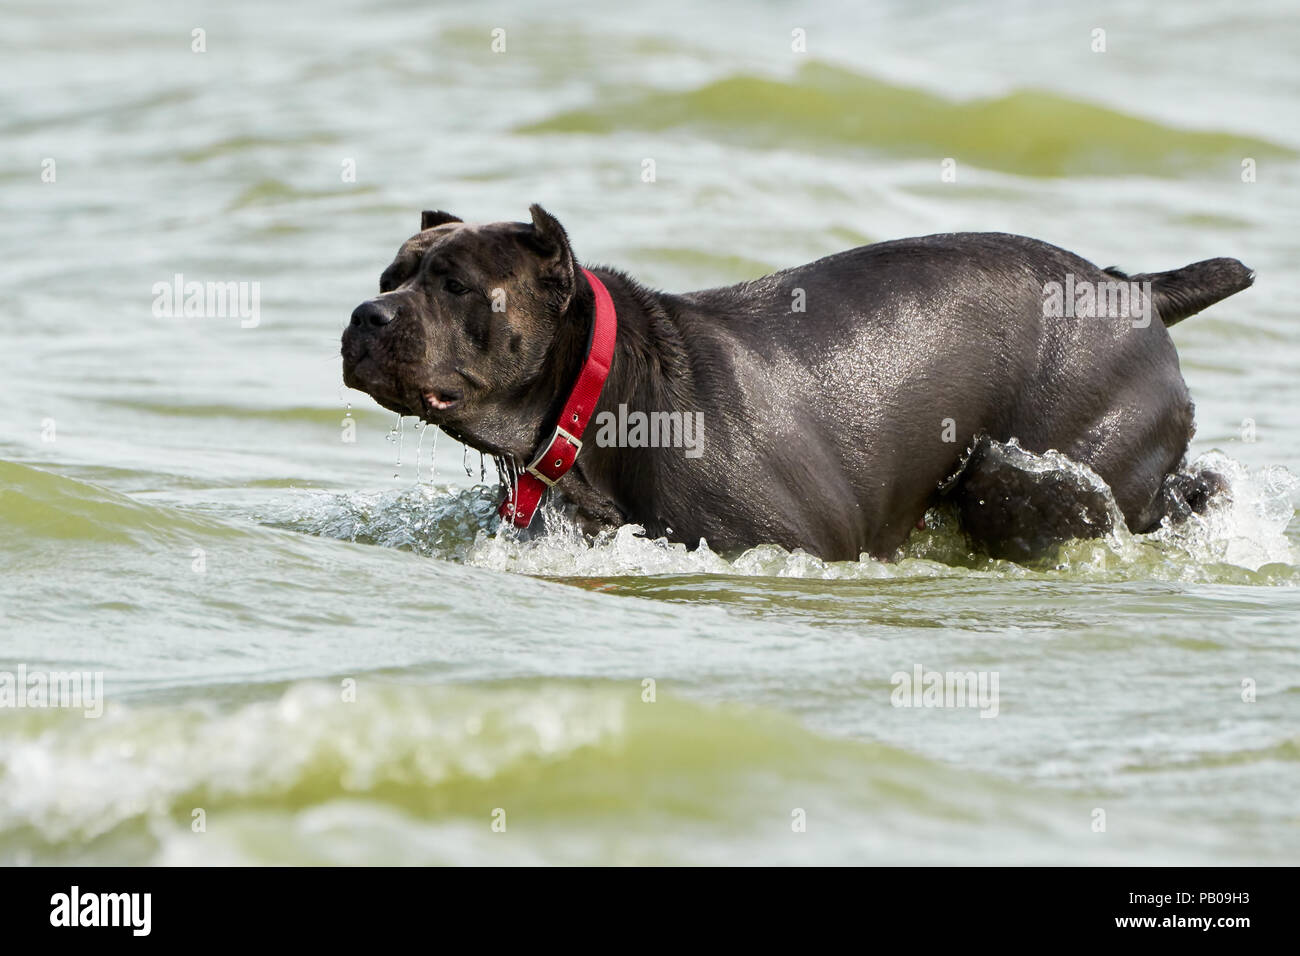 Italian Cane Corso Dog Runs Through The Water On A Hot